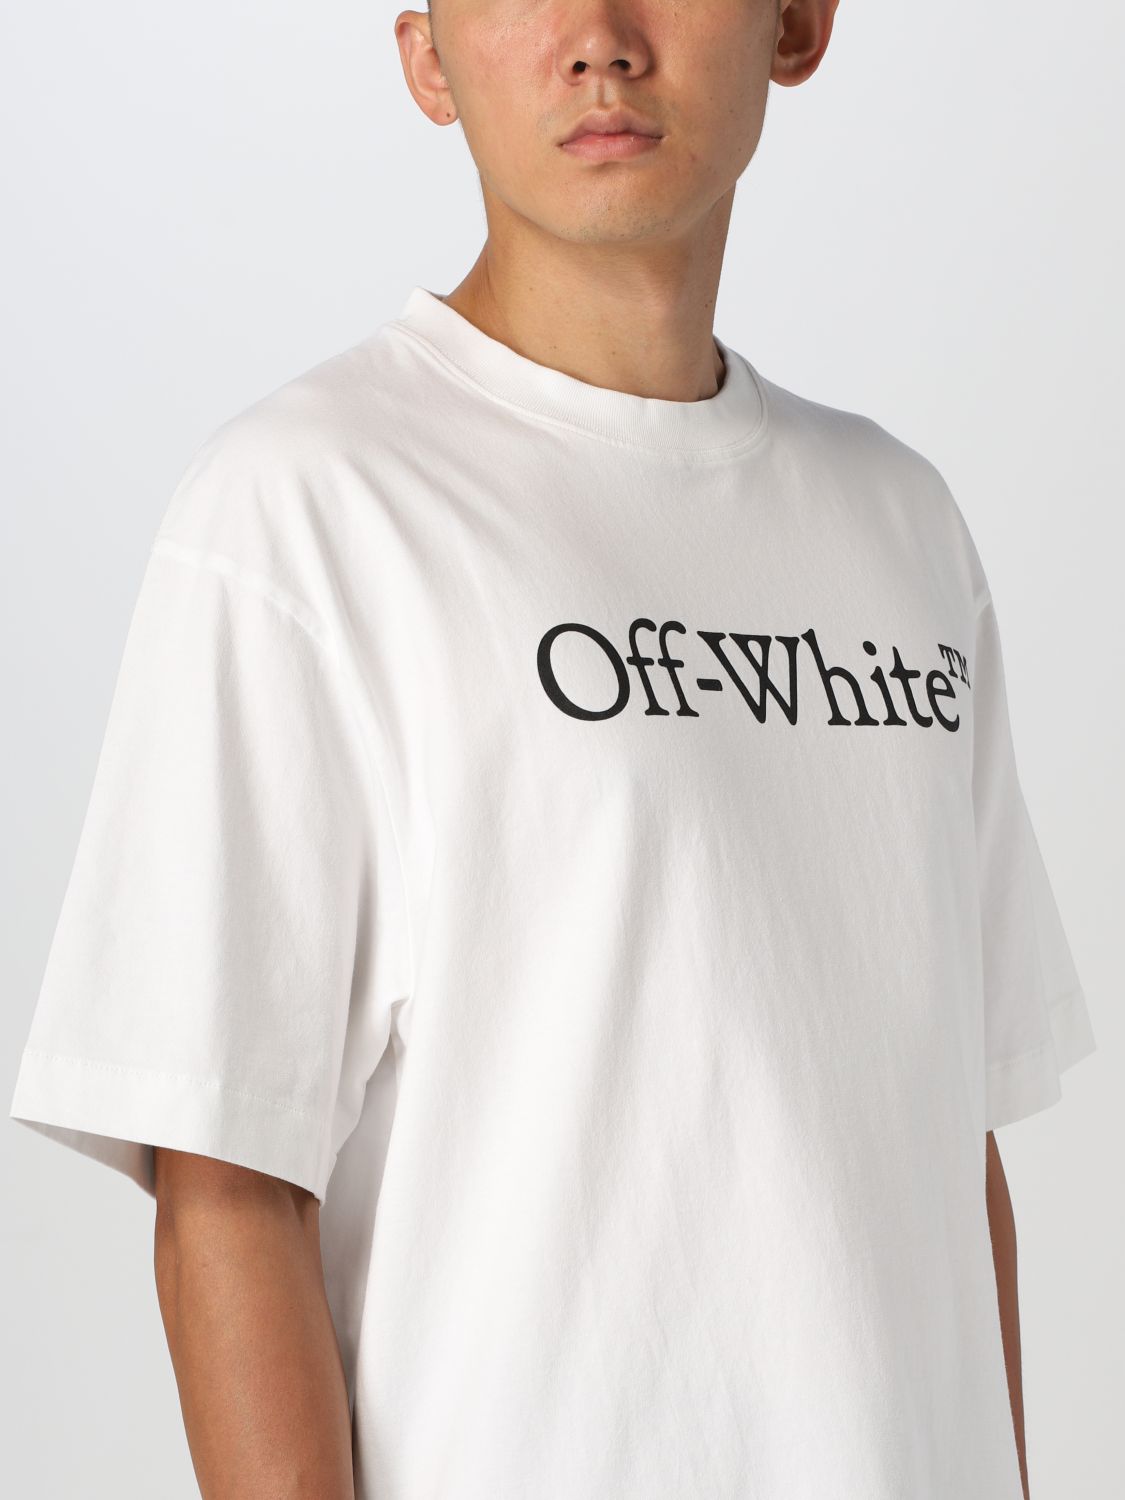 off-whiteTシャツメンズ